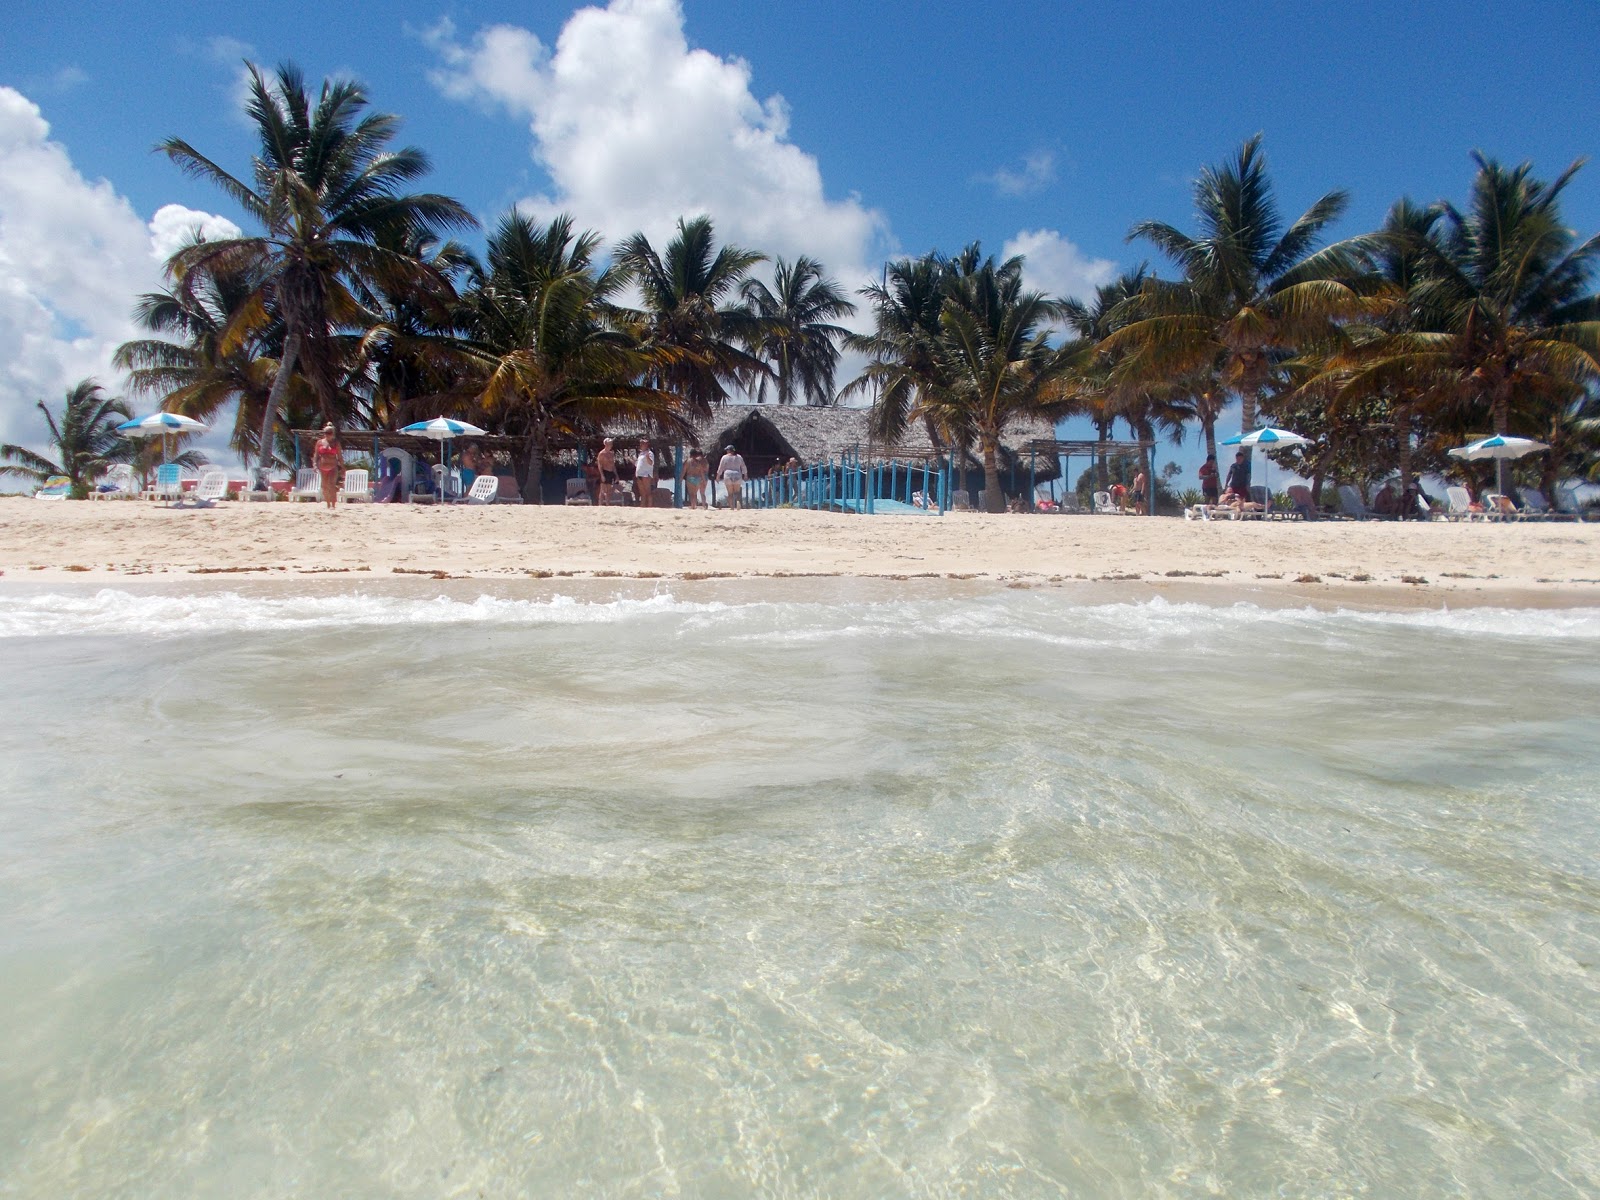 Playa Bonita'in fotoğrafı imkanlar alanı